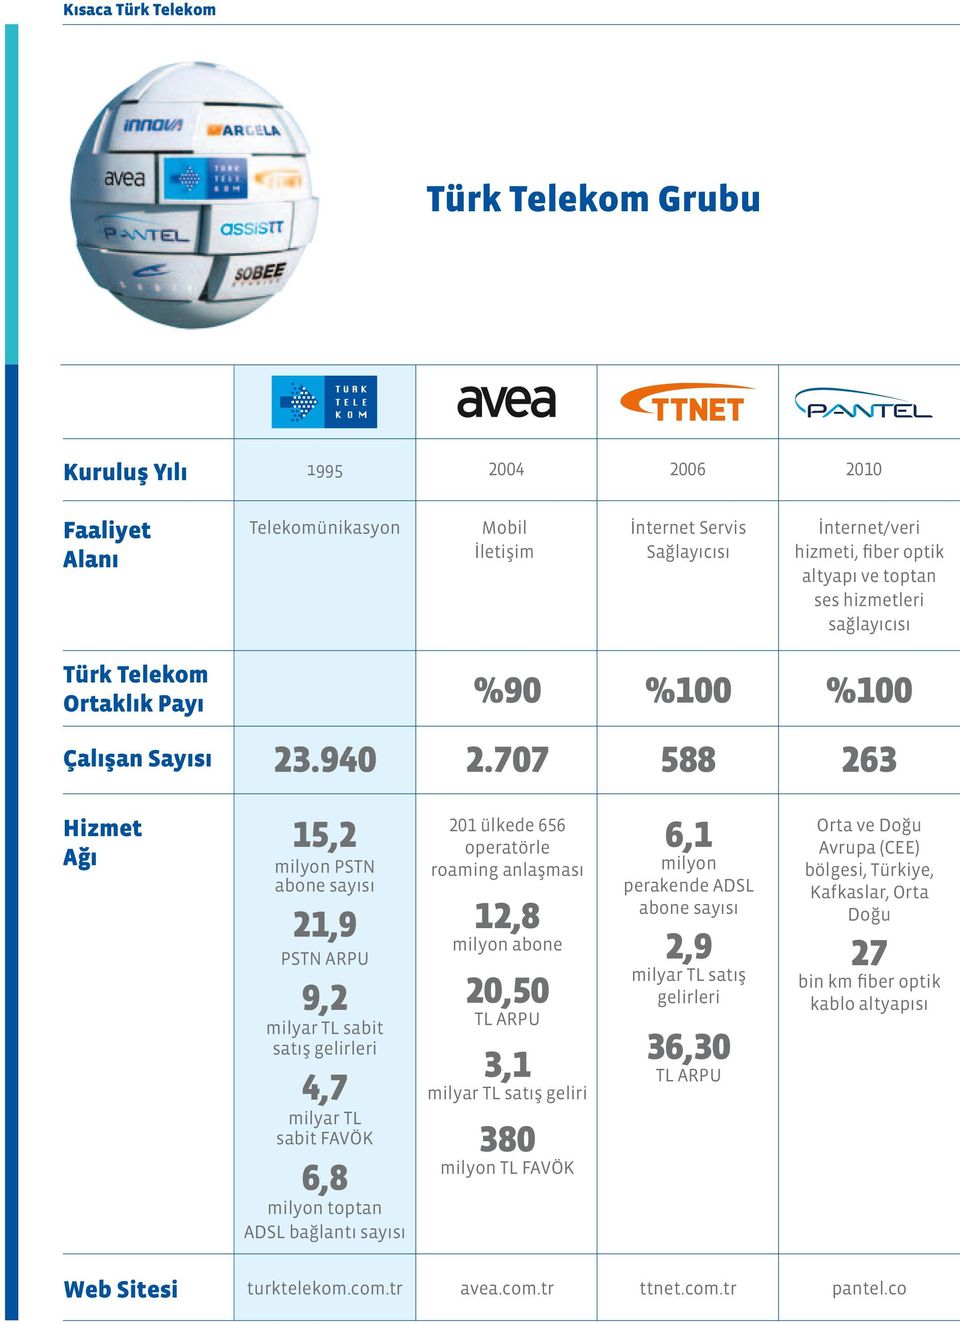 707 588 %100 263 Hizmet Ağı 15,2 milyon PSTN abone sayısı 21,9 PSTN ARPU 9,2 milyar TL sabit satış gelirleri 4,7 milyar TL sabit FAVÖK 6,8 milyon toptan ADSL bağlantı sayısı 201 ülkede 656 operatörle